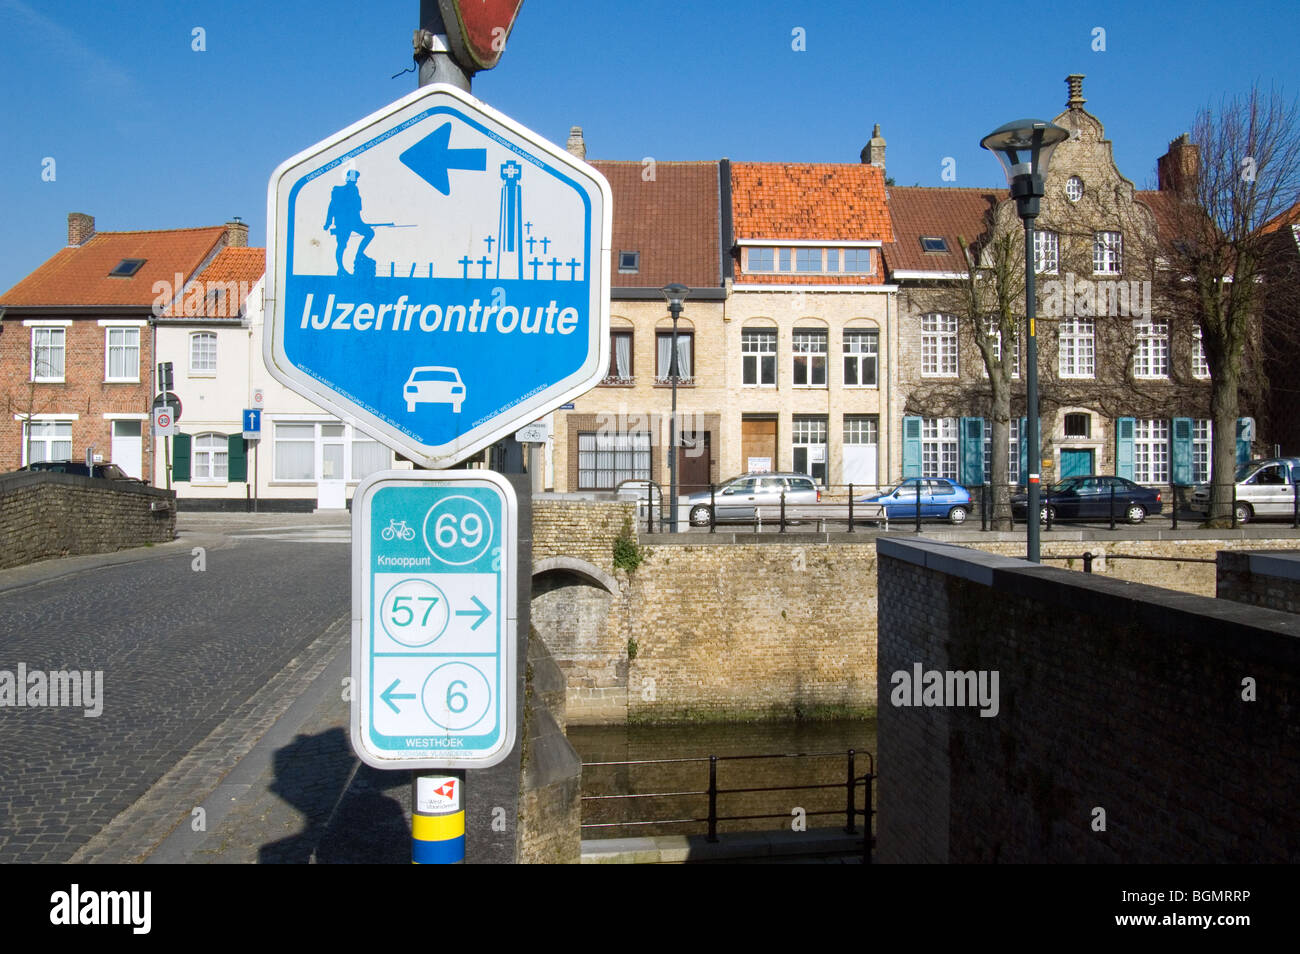 Señal de tráfico en bicicleta camino junction y señalizar la ruta de red delantera IJzer, Diksmuide, Bélgica Foto de stock